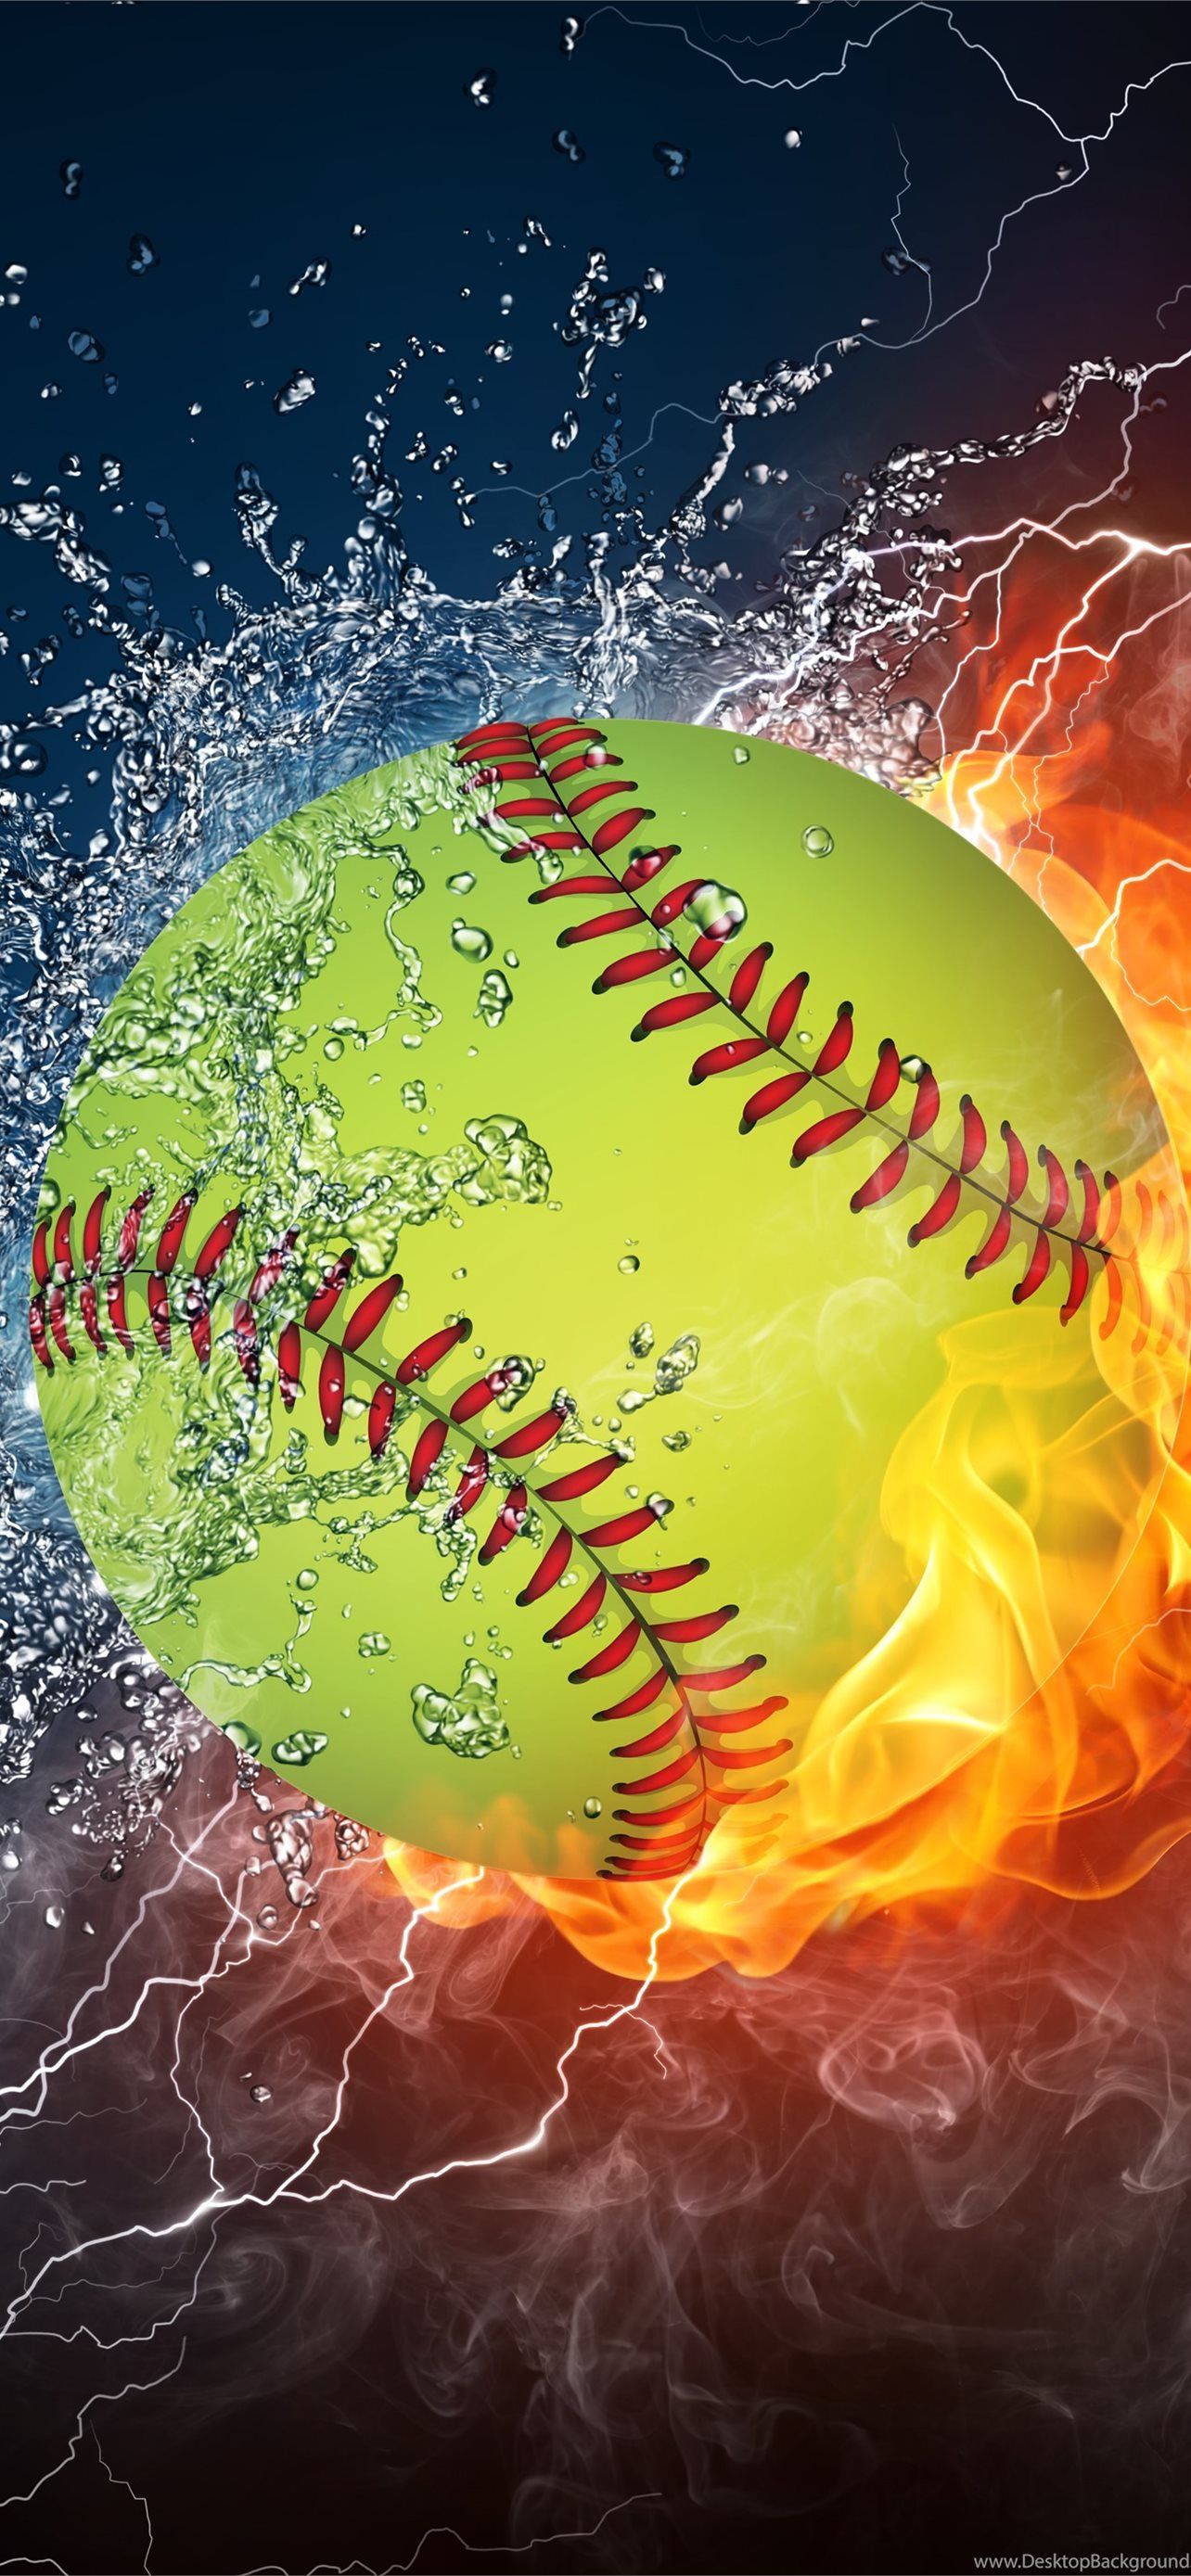 Best Softball iPhone HD Wallpaper